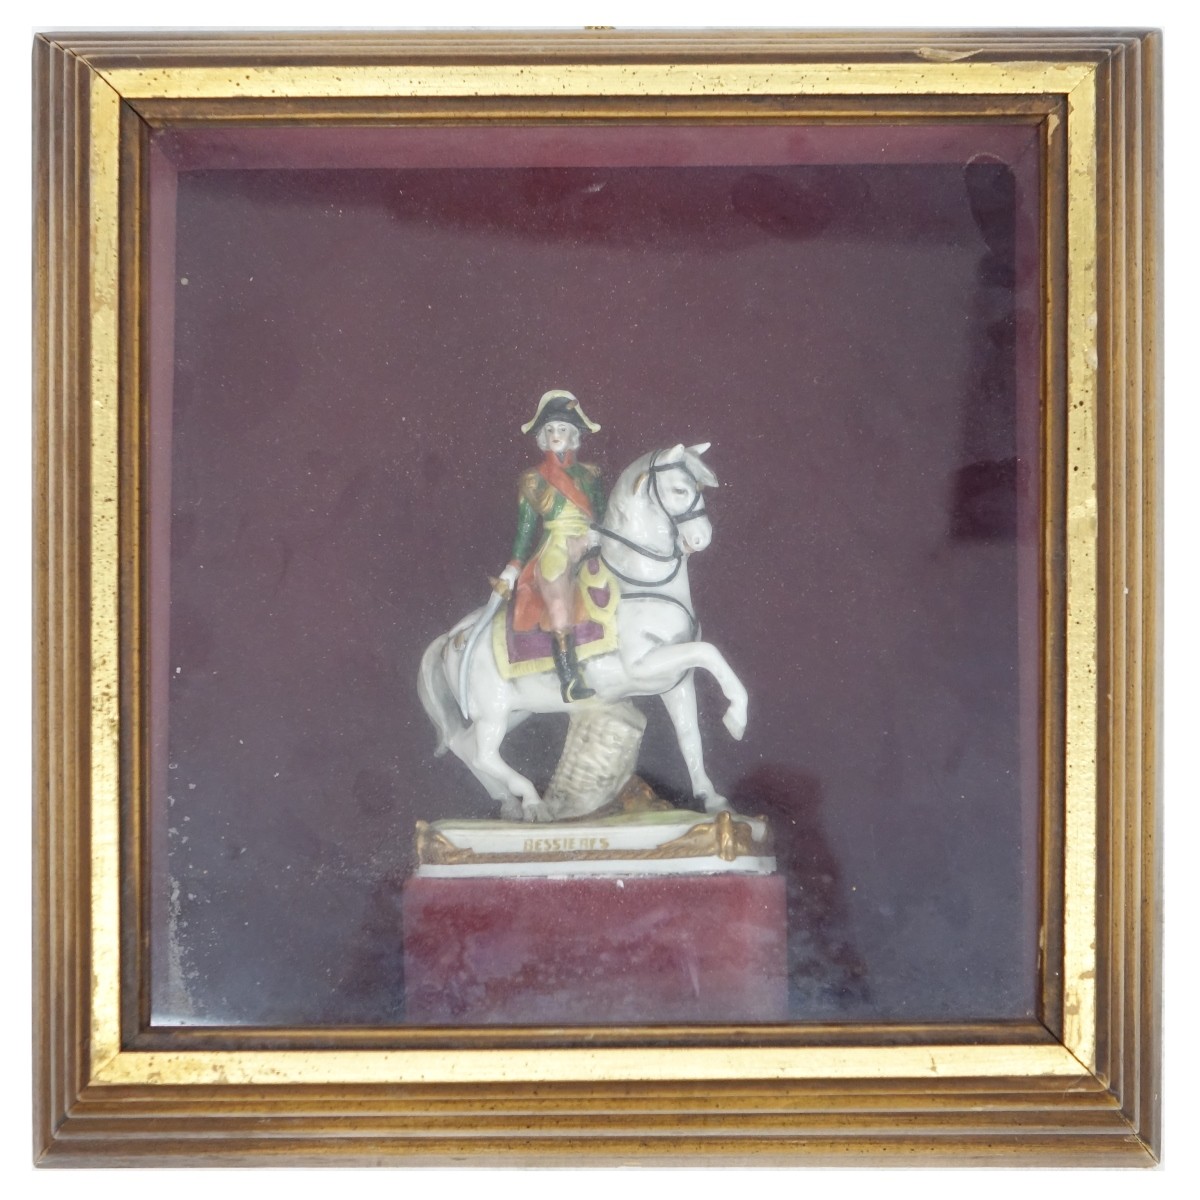 Scheibe Alsbach German Napoleonic Figurine